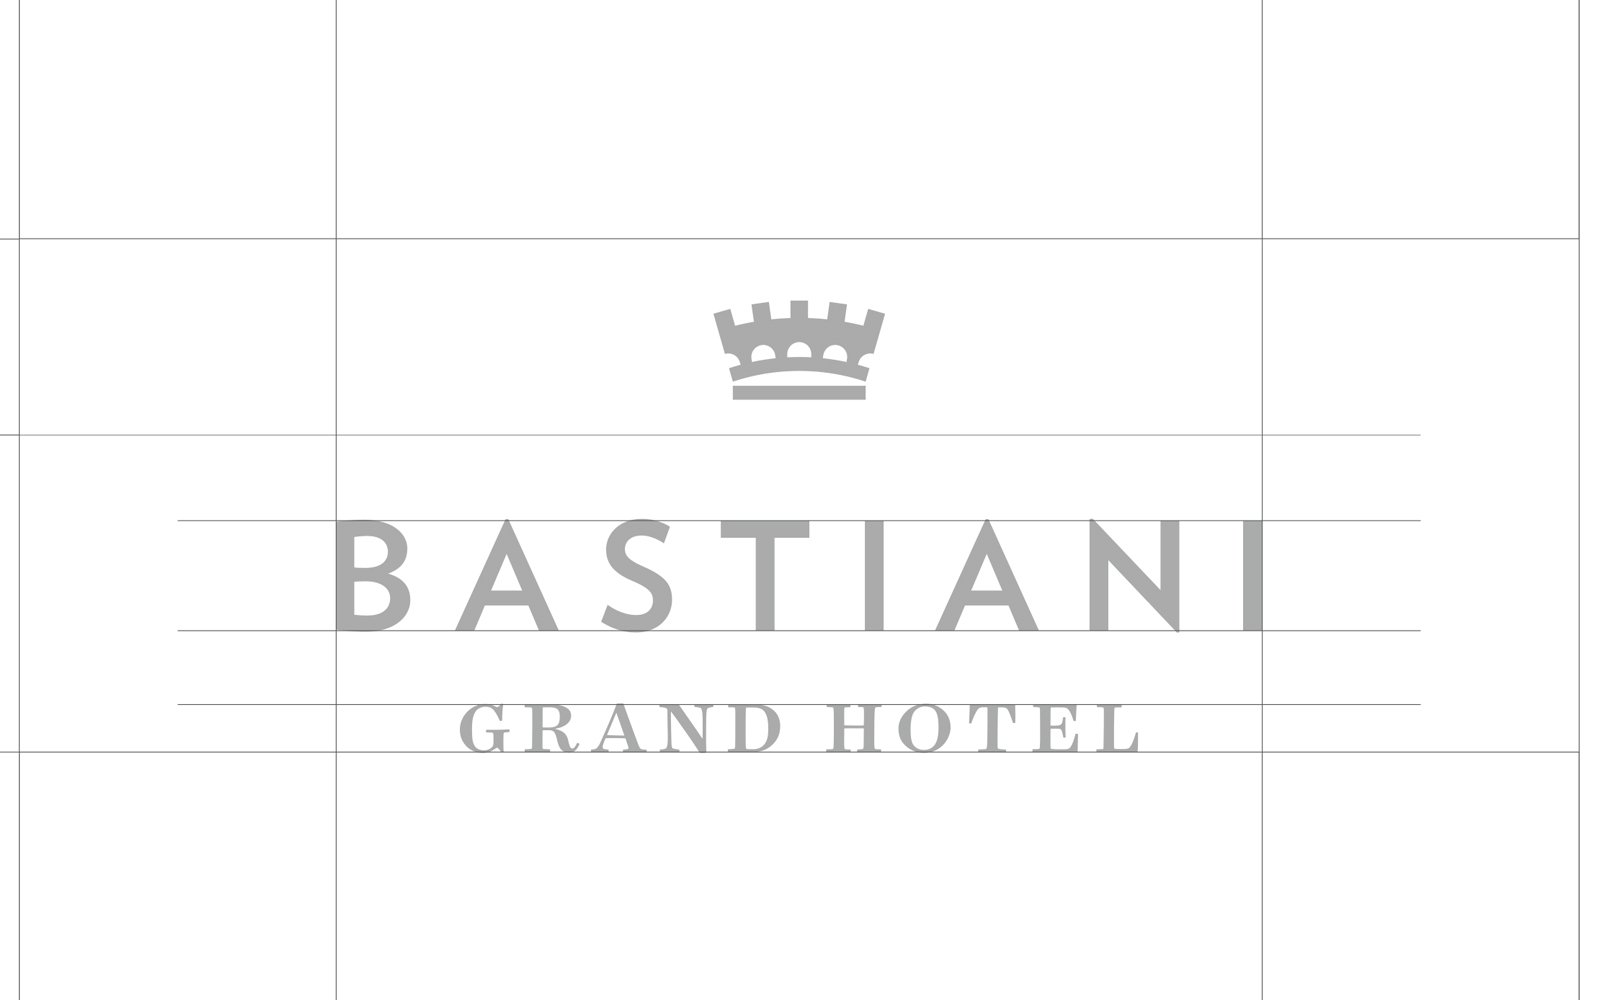 Nuova immagine per il Grand Hotel Bastiani